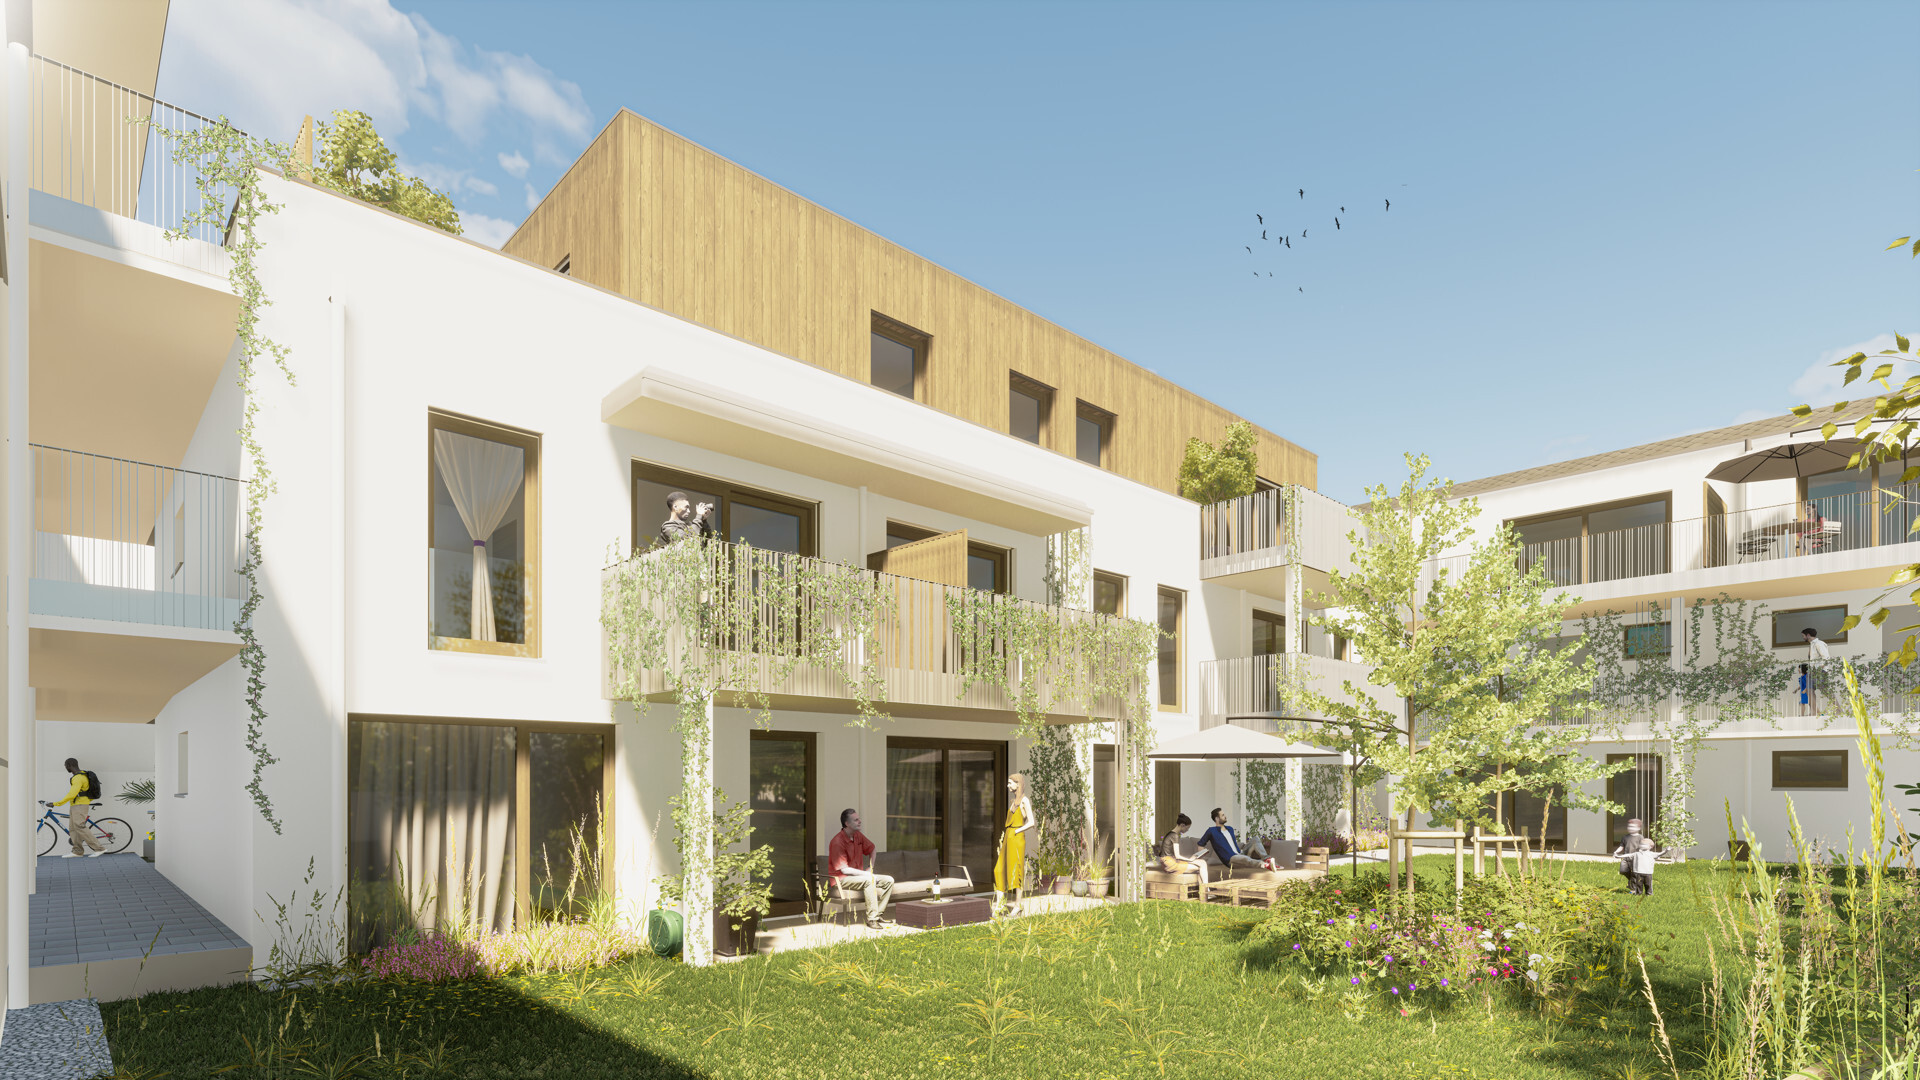 Maisonette-Wohnung mit Balkon und Grünblick - naturnahes Wohnen in perfekter Lage - zu kaufen in 2340 Mödling